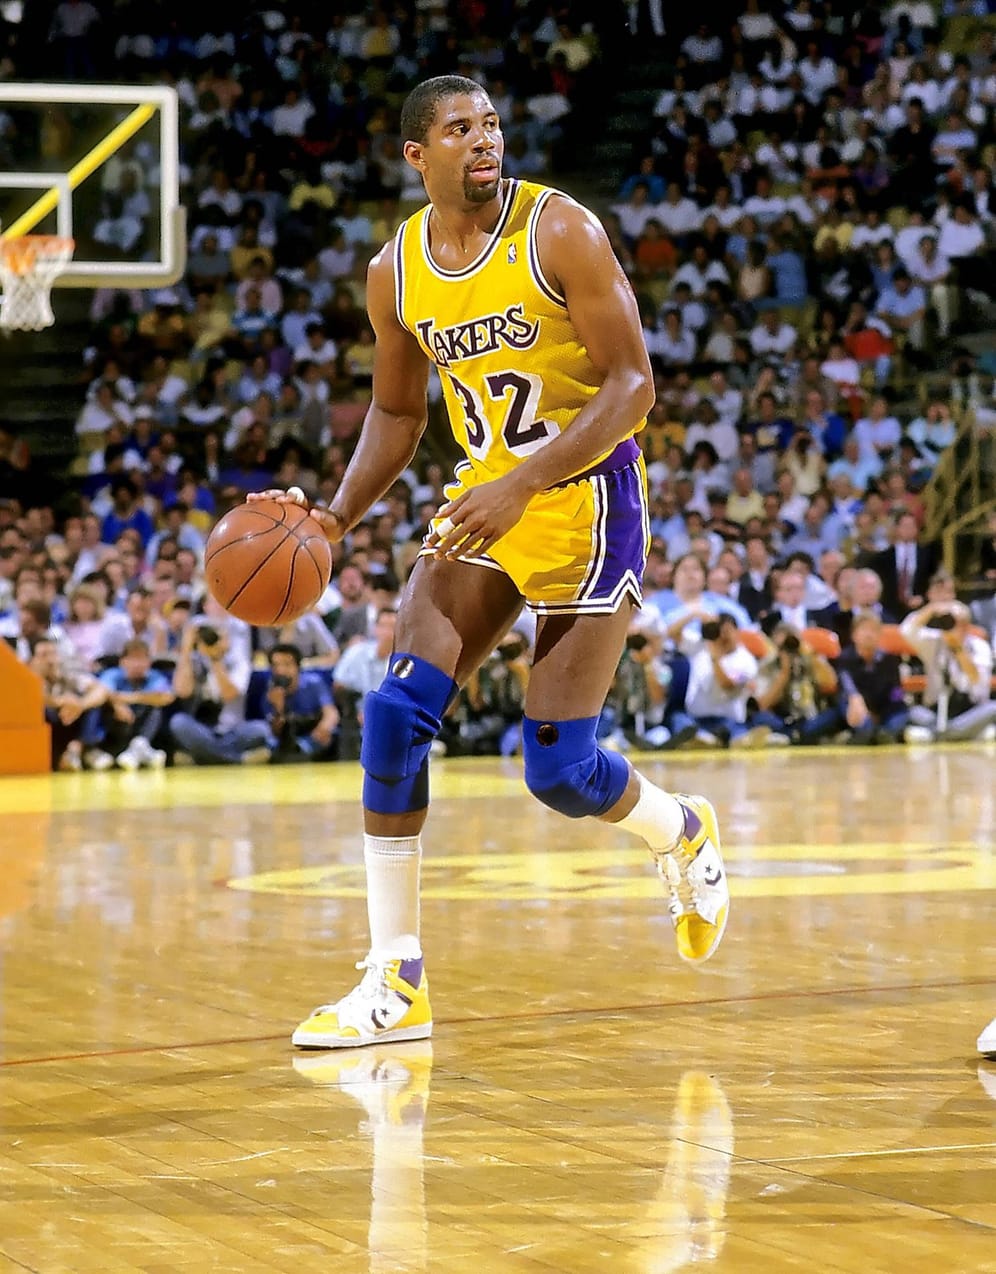 Fünfmal Meister mit den Lakers, Olympia-Gold und Dutzende persönliche Ehrungen. Magic Johnson gehörte zu den besten Basketballspielern des Planeten, ehe 1991 bei einer Routine-Untersuchung seine HIV-Infektion entdeckt wird. Johnson beendete seine Karriere, auch, weil es die unbegründete Sorge gab, Johnson könne seine Mitspieler anstecken. Nach einer hitzigen Debatte kehrte er 1994 als Spielertrainer zu den Lakers zurück. Das Engagement dauerte nicht lang – 1996 ist endgültig Schluss.